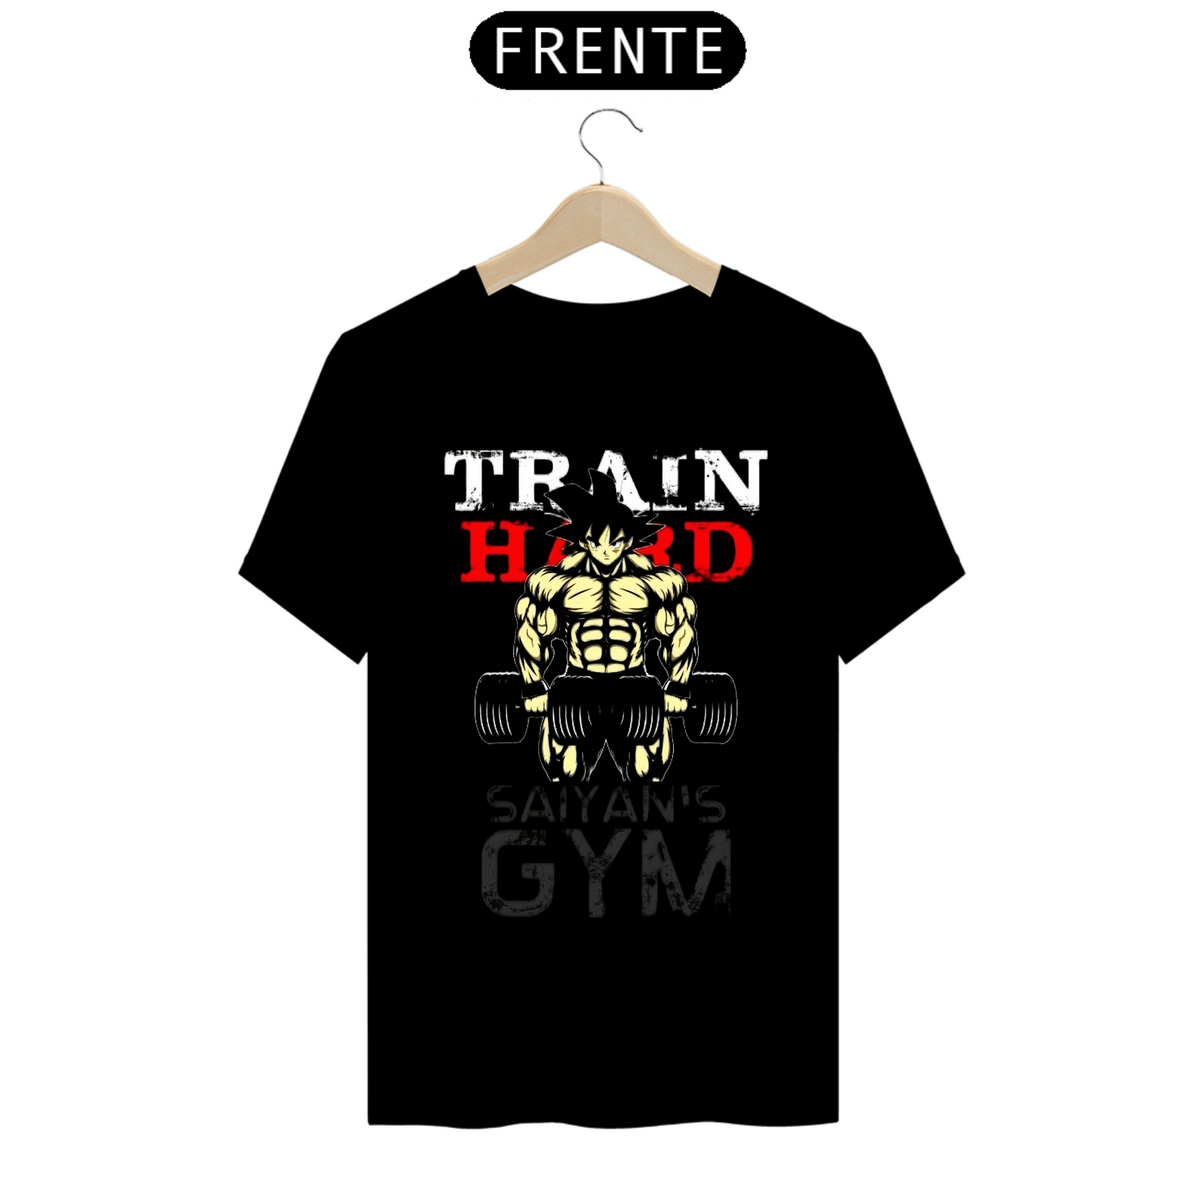 Nome do produto: Camisa Train Hard